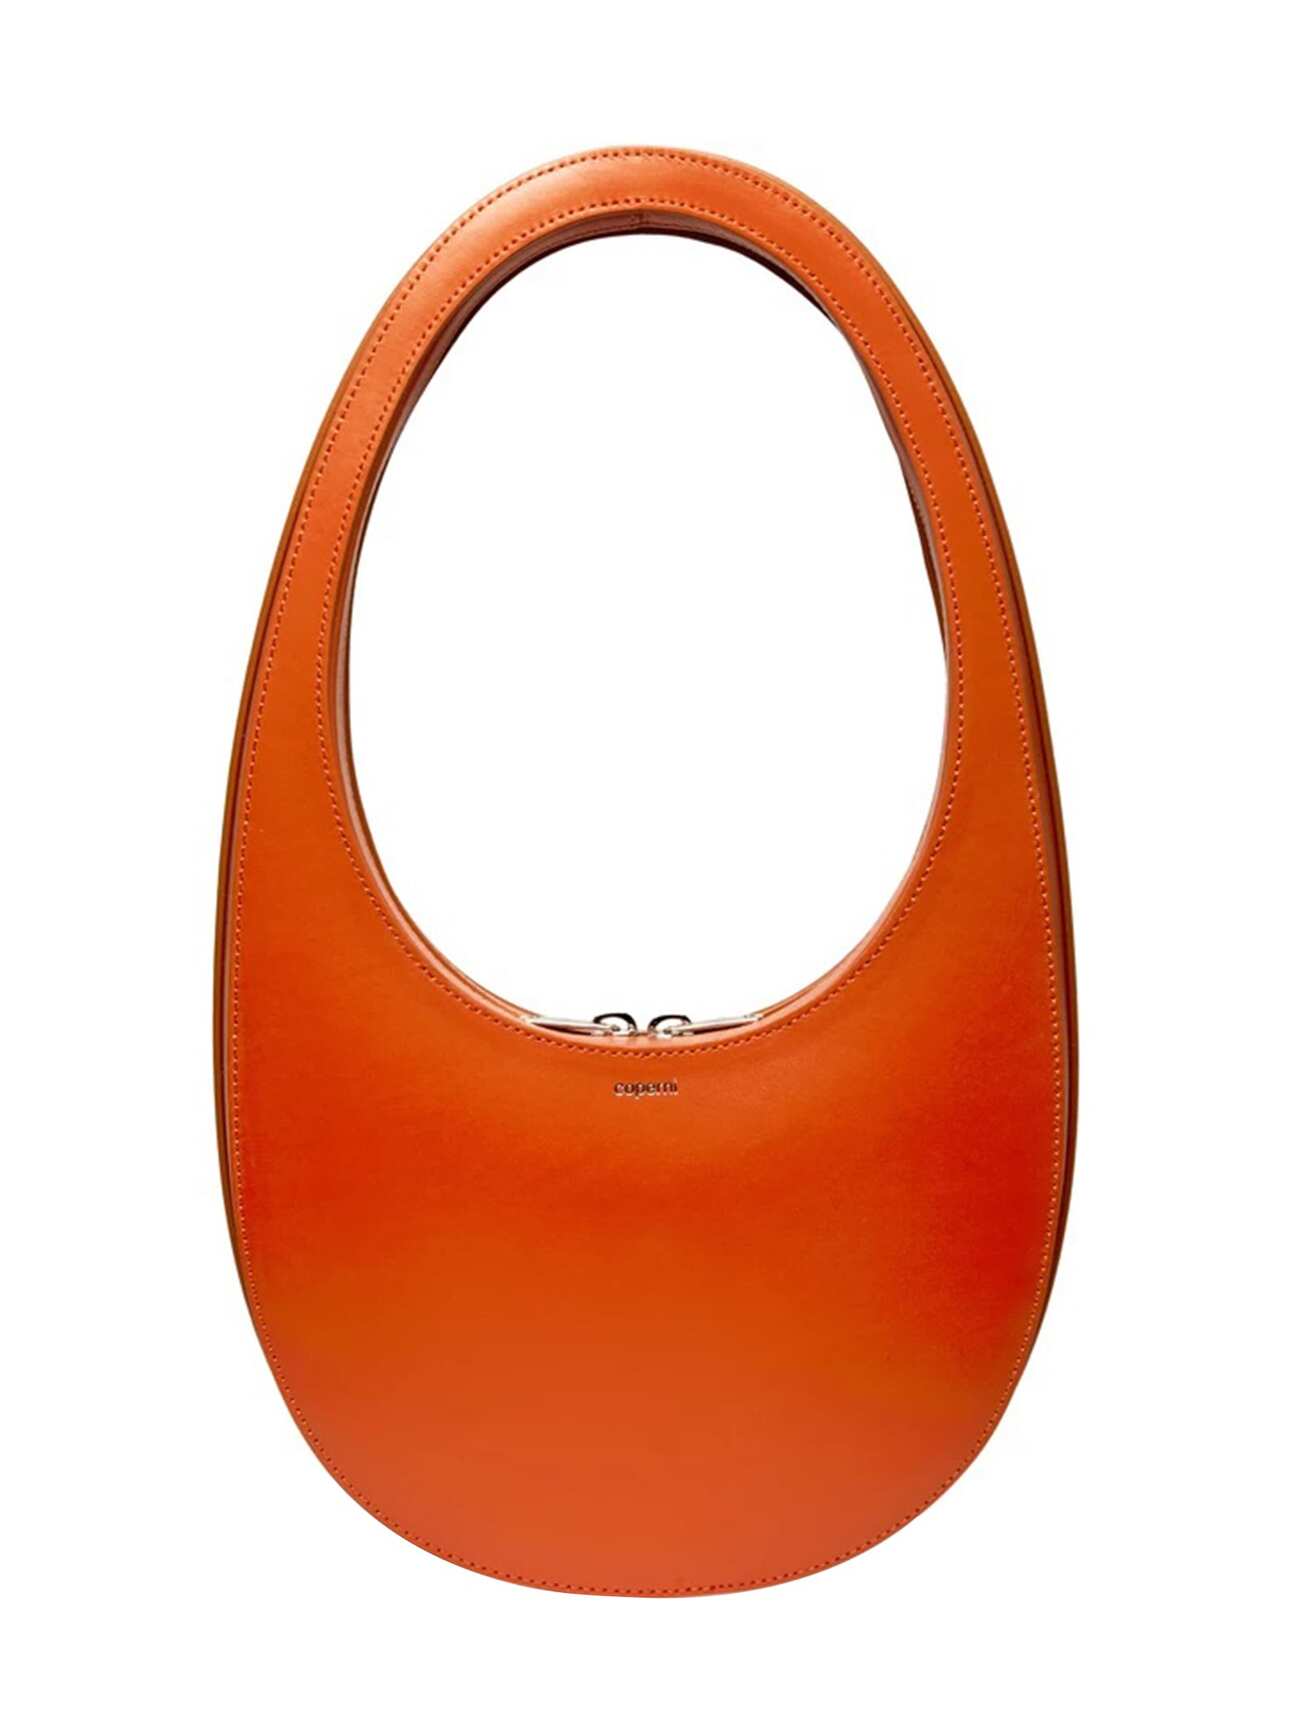 Coperni Oval Tote Bag in orange